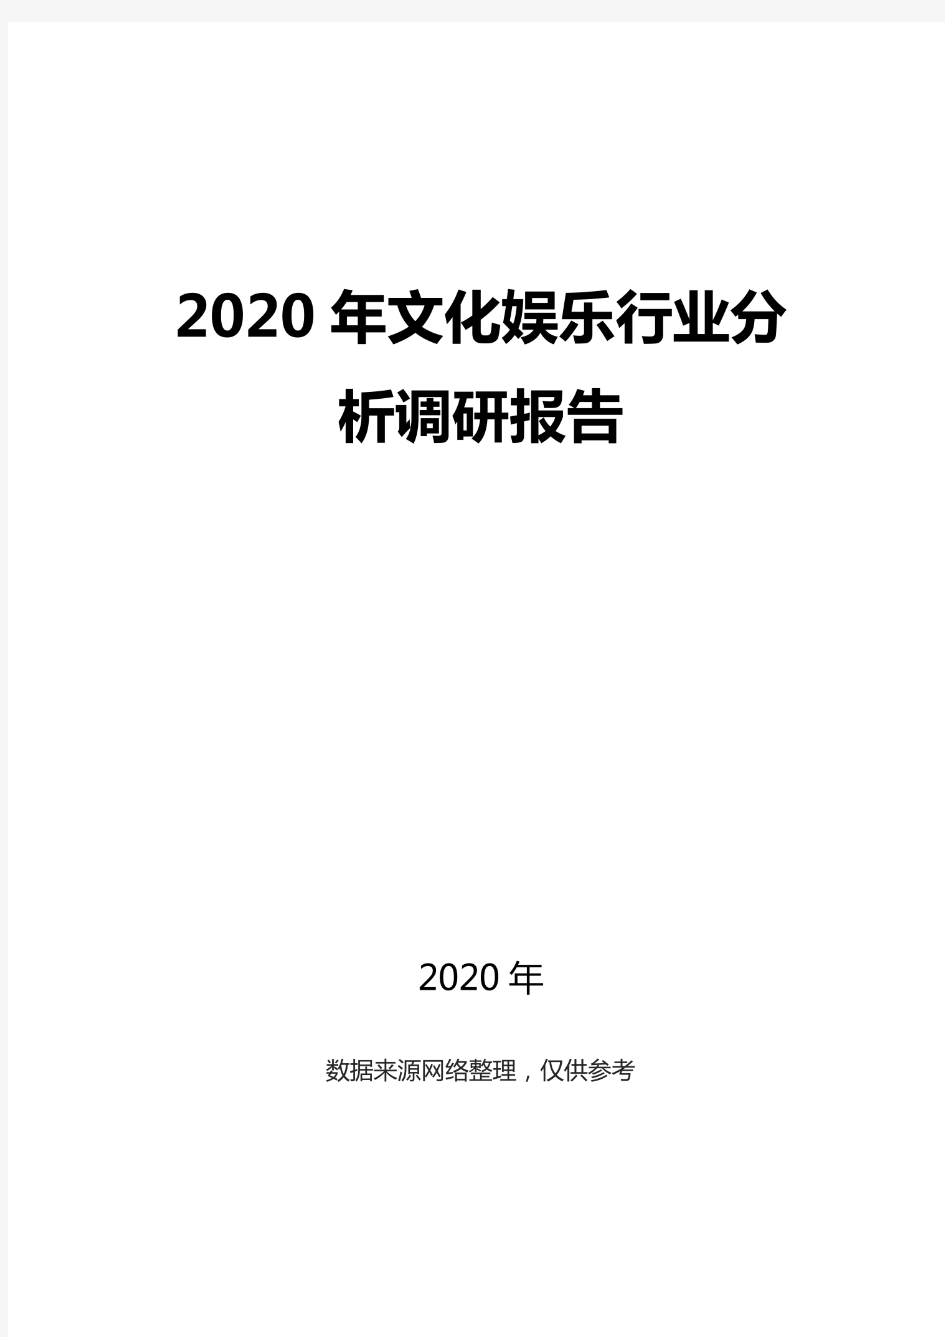 2020文化娱乐行业分析调研报告